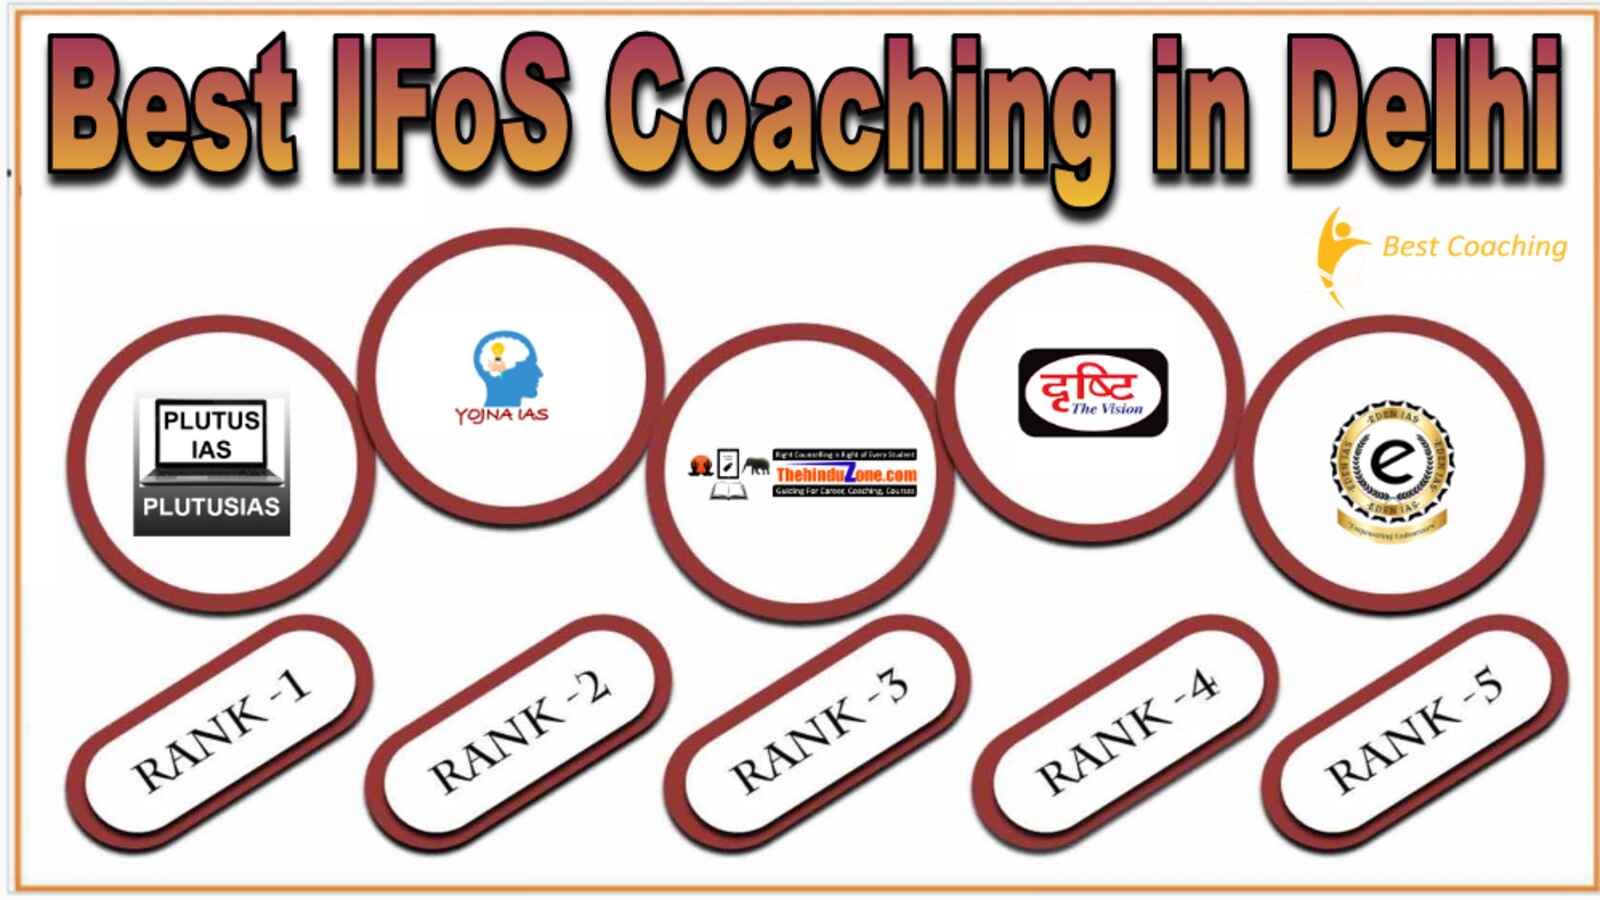 Best IFOS Coaching in Delhi